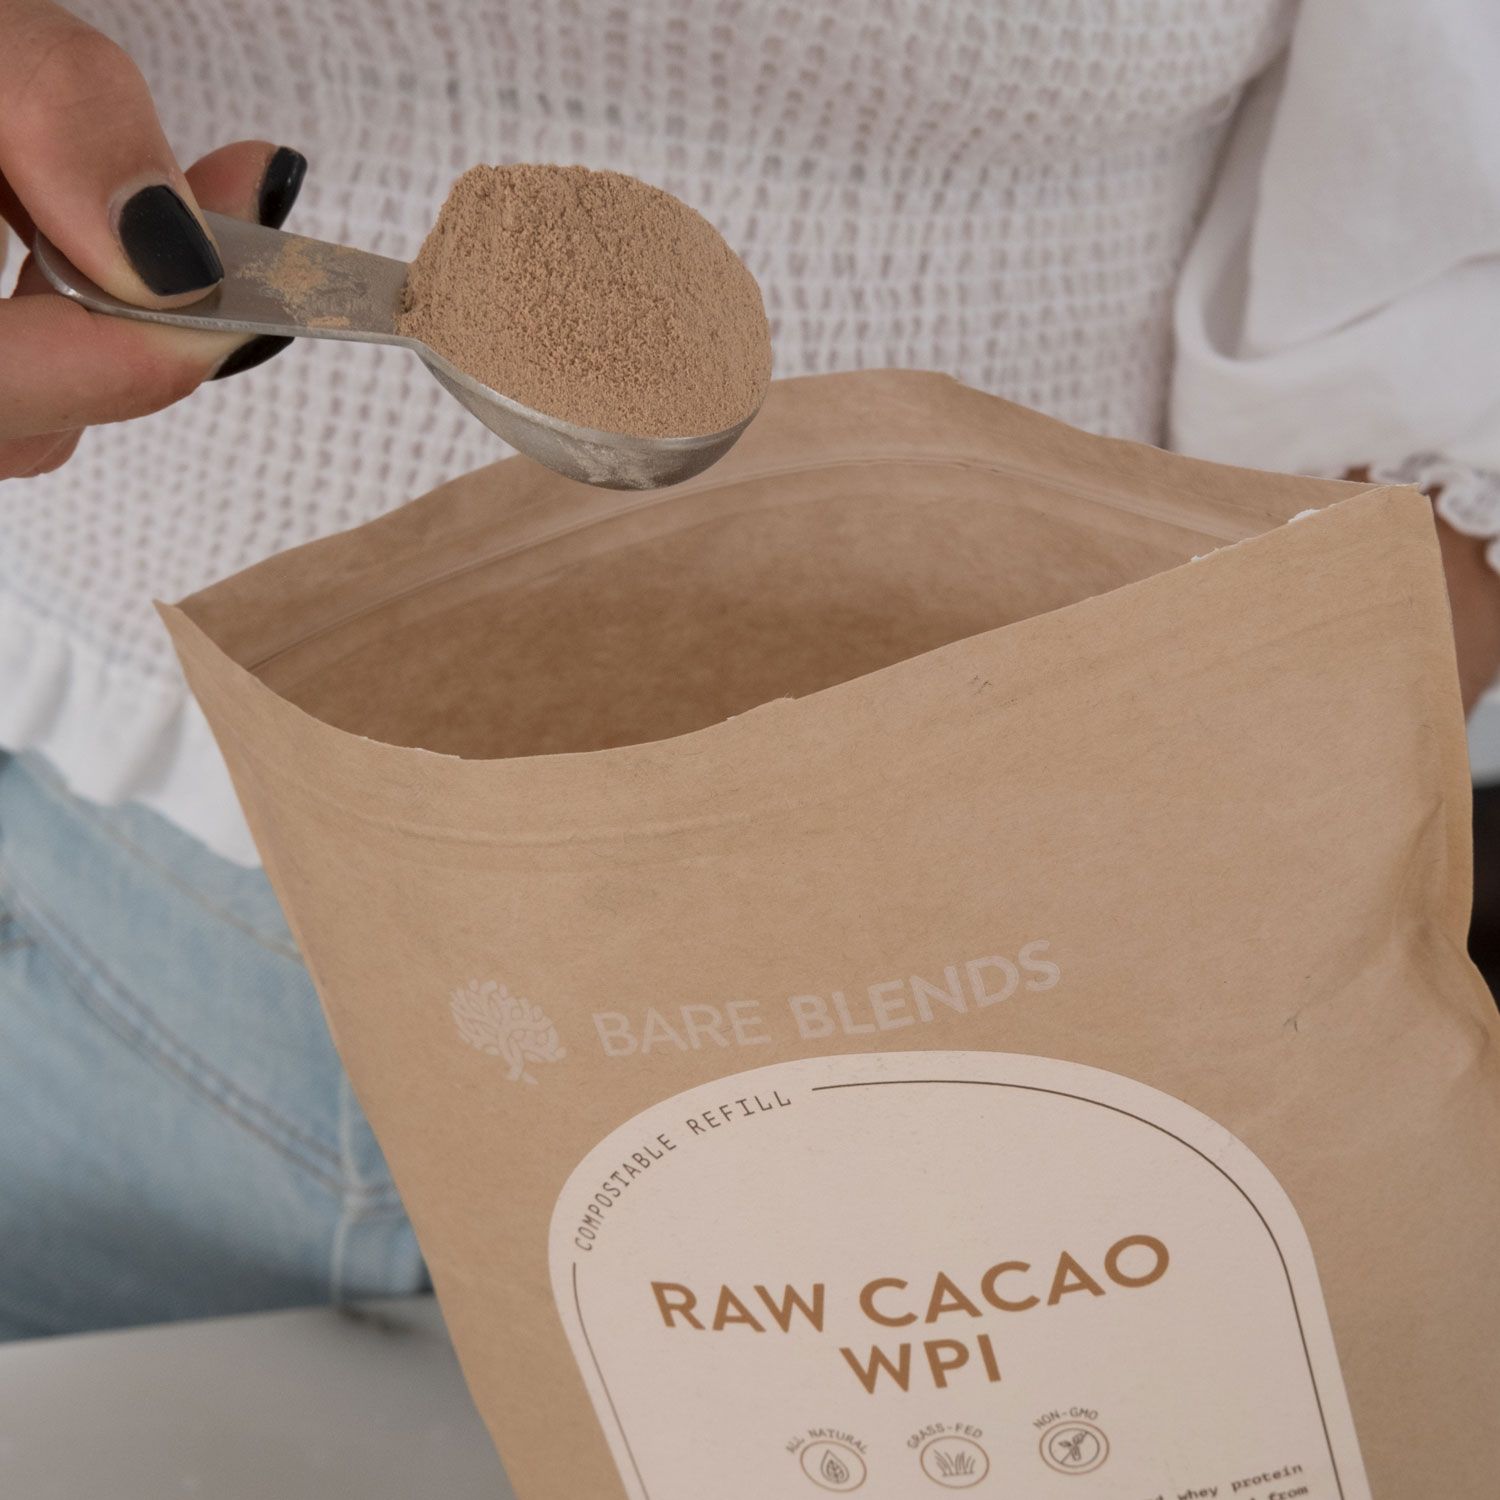 Raw Cacao WPI scoop powder